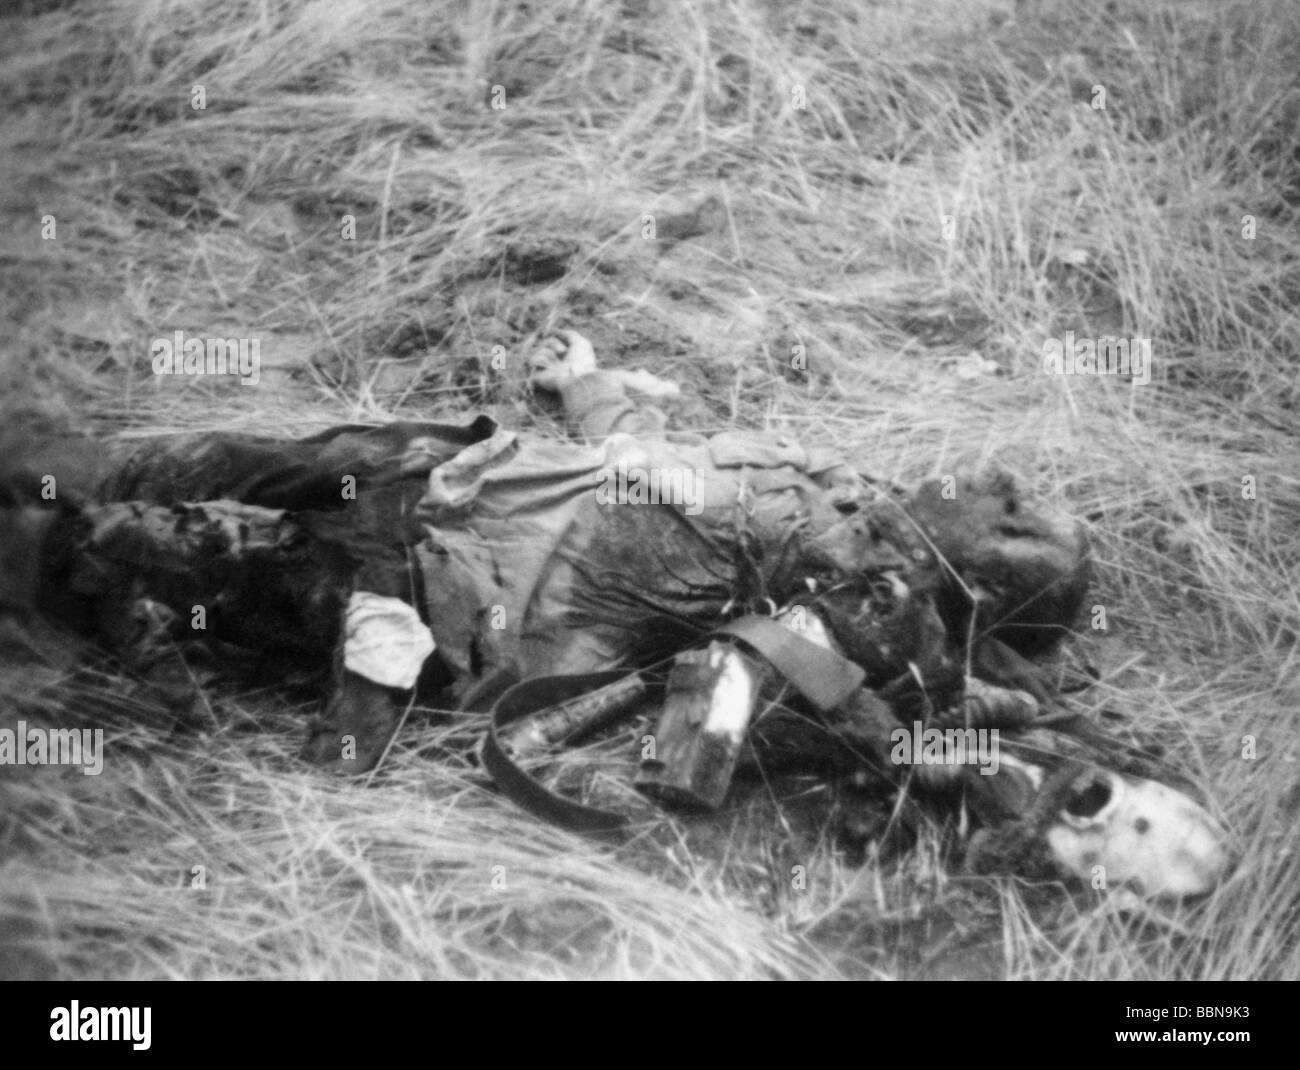 Ereignisse, Zweiter Weltkrieg / 2. Weltkrieg, Russland, gefallene Soldaten  / tote Leichen, gefallener Soldat der Sowjetunion, Juli 1941  Stockfotografie - Alamy